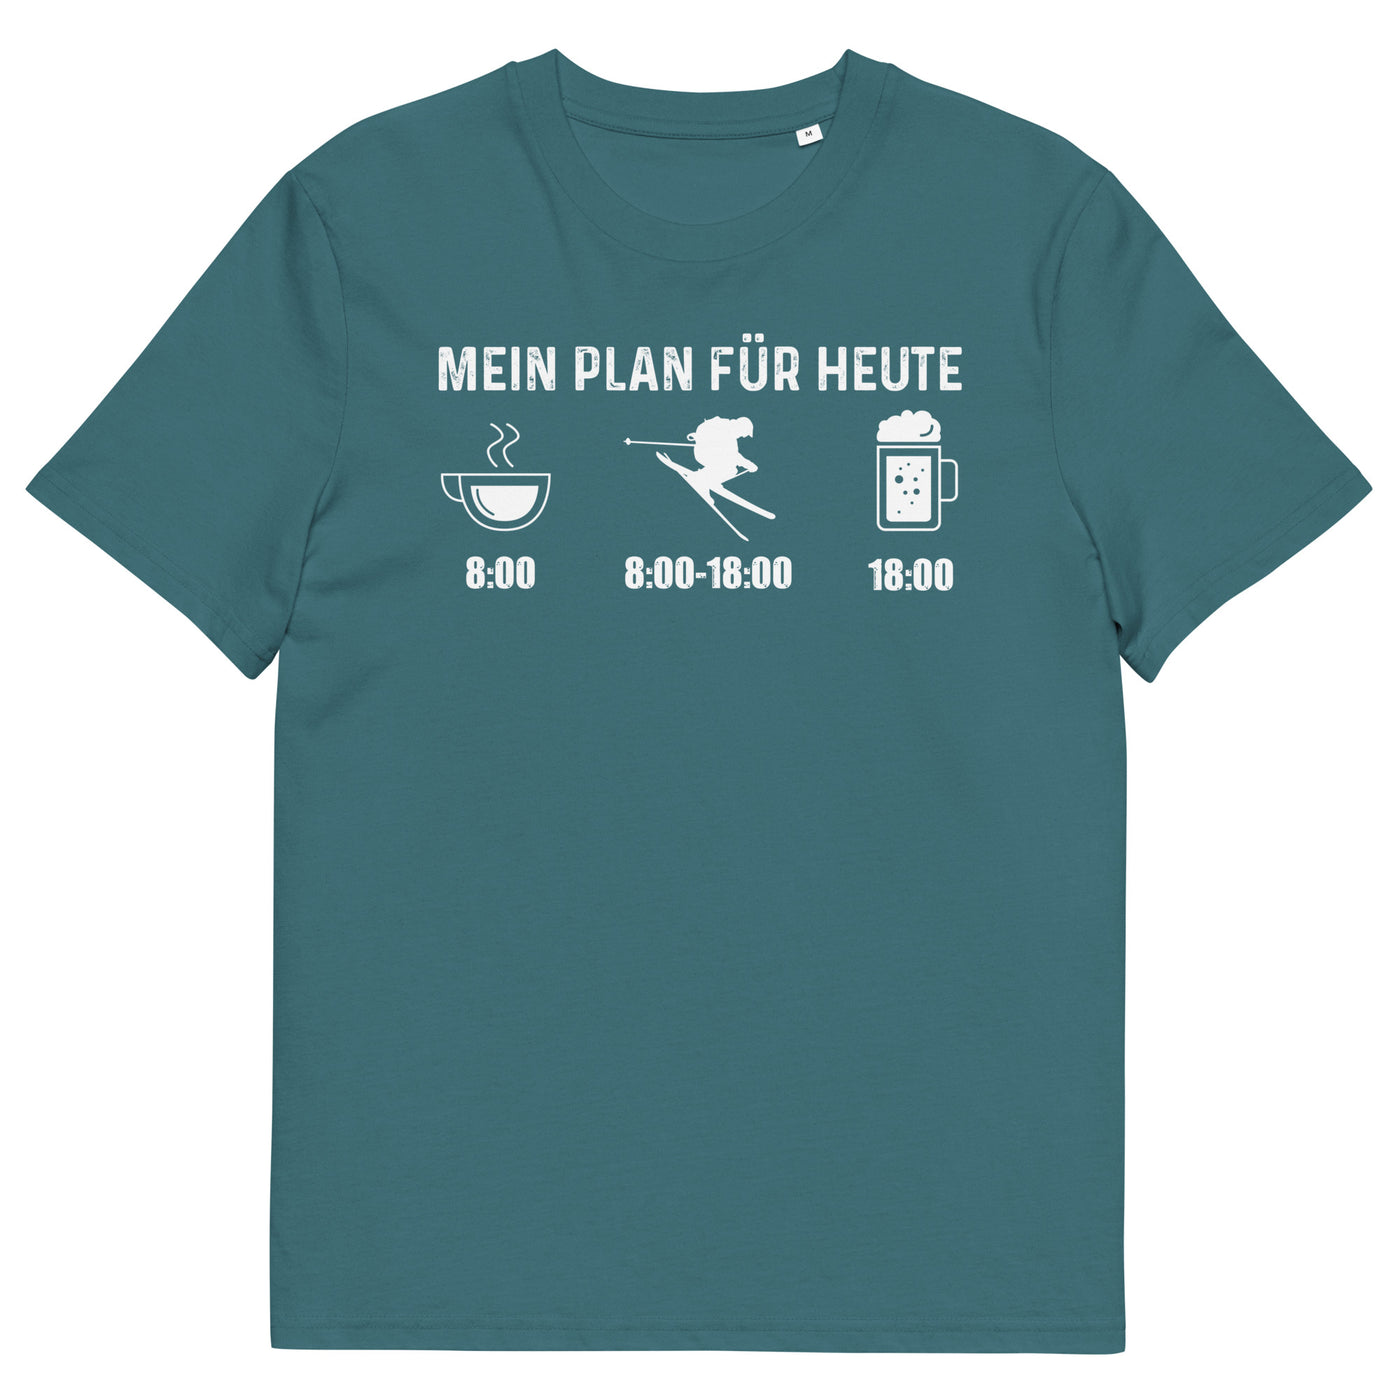 Mein Plan Für Heute - Herren Premium Organic T-Shirt klettern ski xxx yyy zzz Stargazer